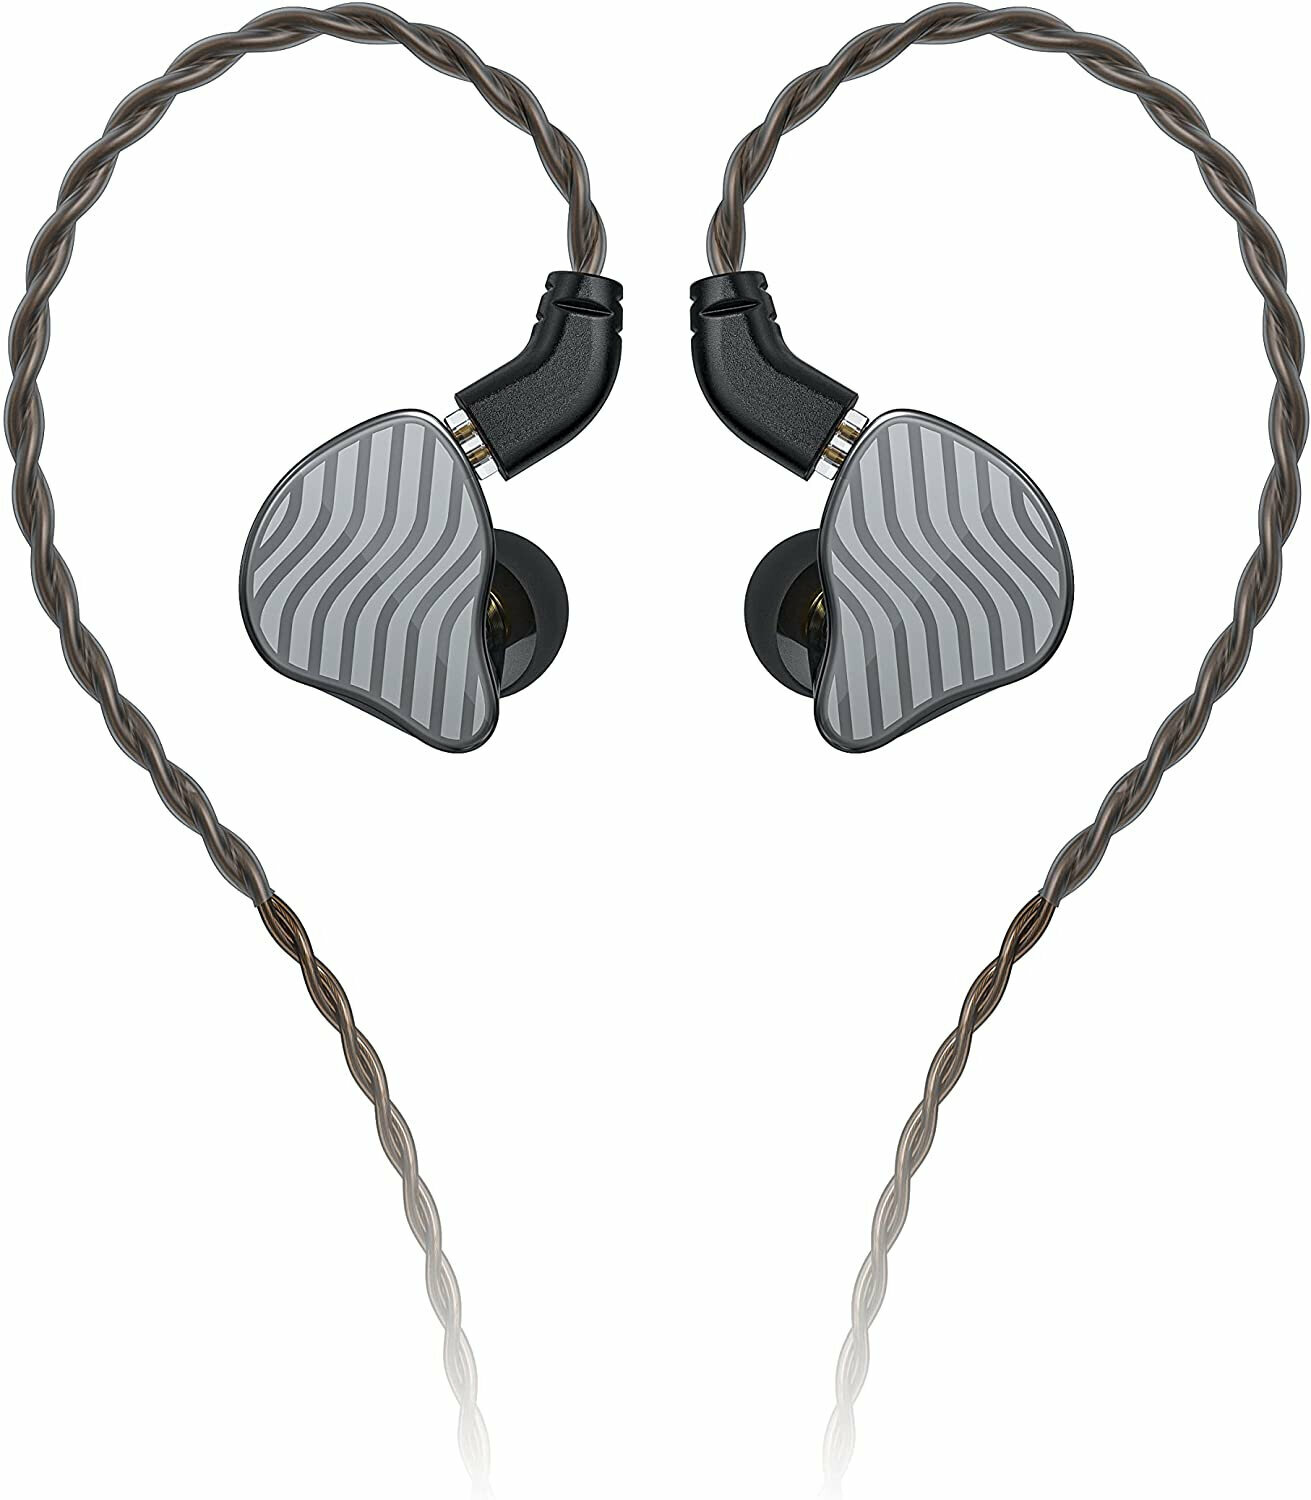 Ušesne zanke slušalke FiiO JH3